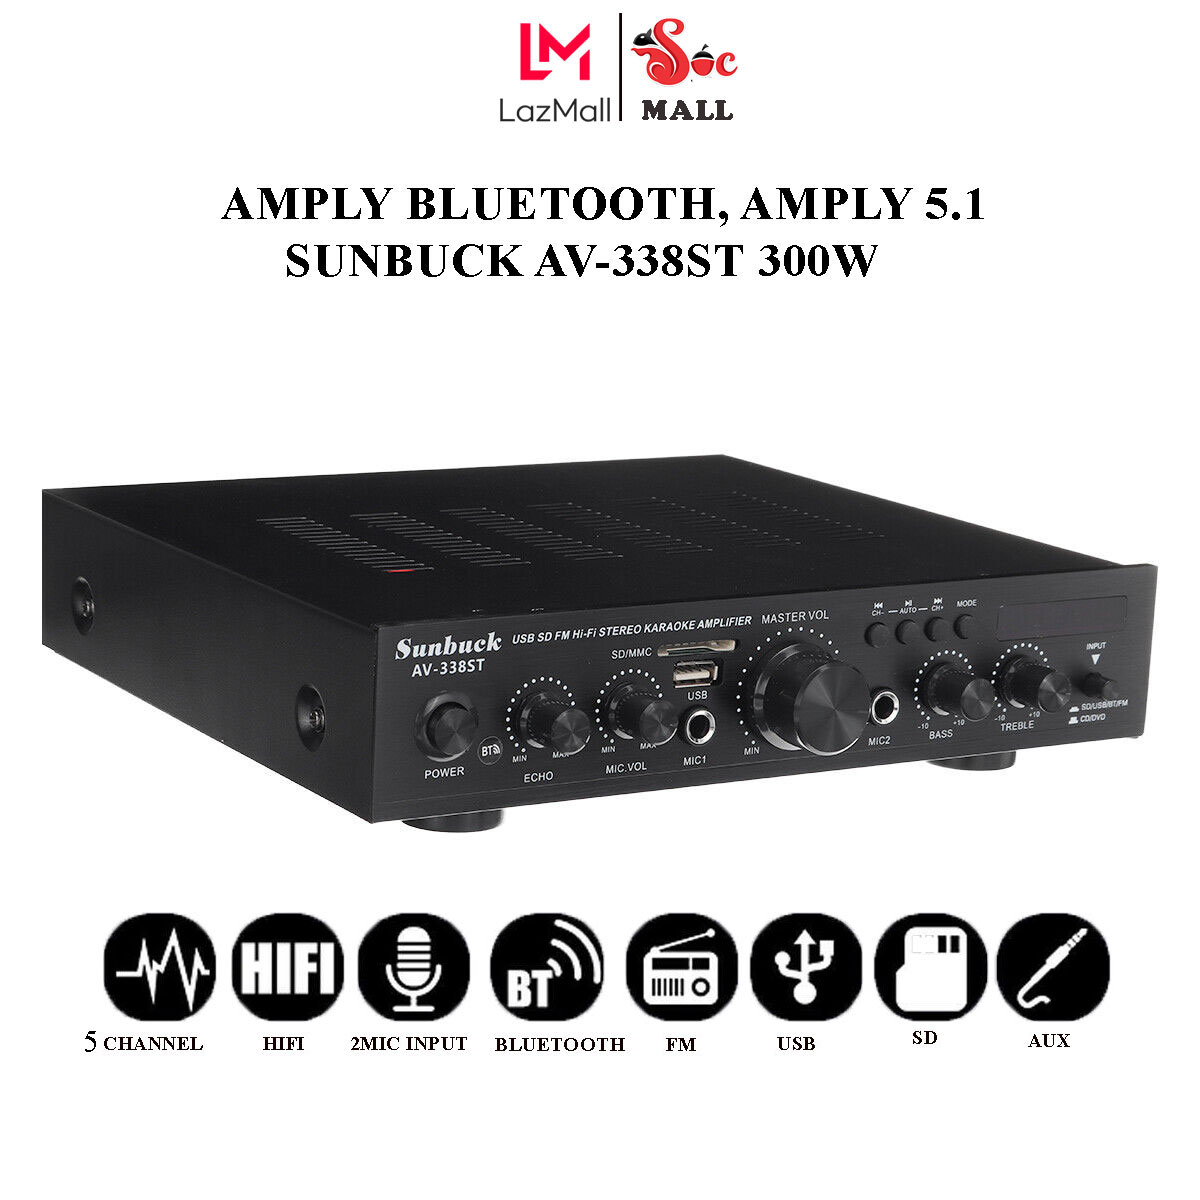 Amply Công Suất Lớn, Amply Karaoke Gia Đình, Amply công suất lớn Sunbuck AV-338ST 300W, 5 kênh, kết nối bluetooth, hỗ trợ 2 micro, đầu vào AUX. Bảo hành 12 tháng